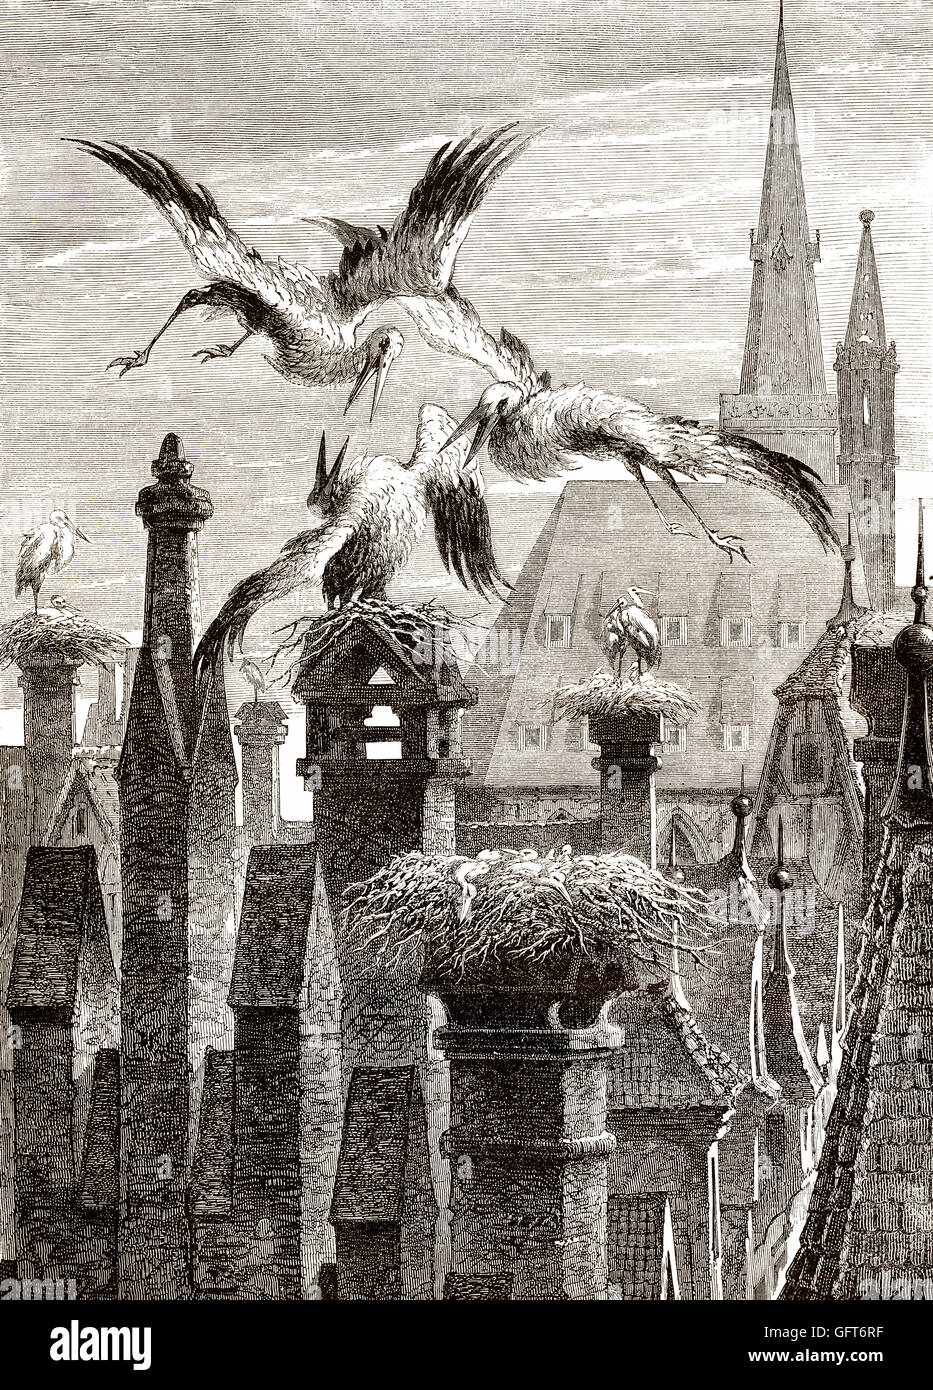 Nids de cigognes dans la ville de Strasbourg, Alsace, France, 19e siècle Banque D'Images